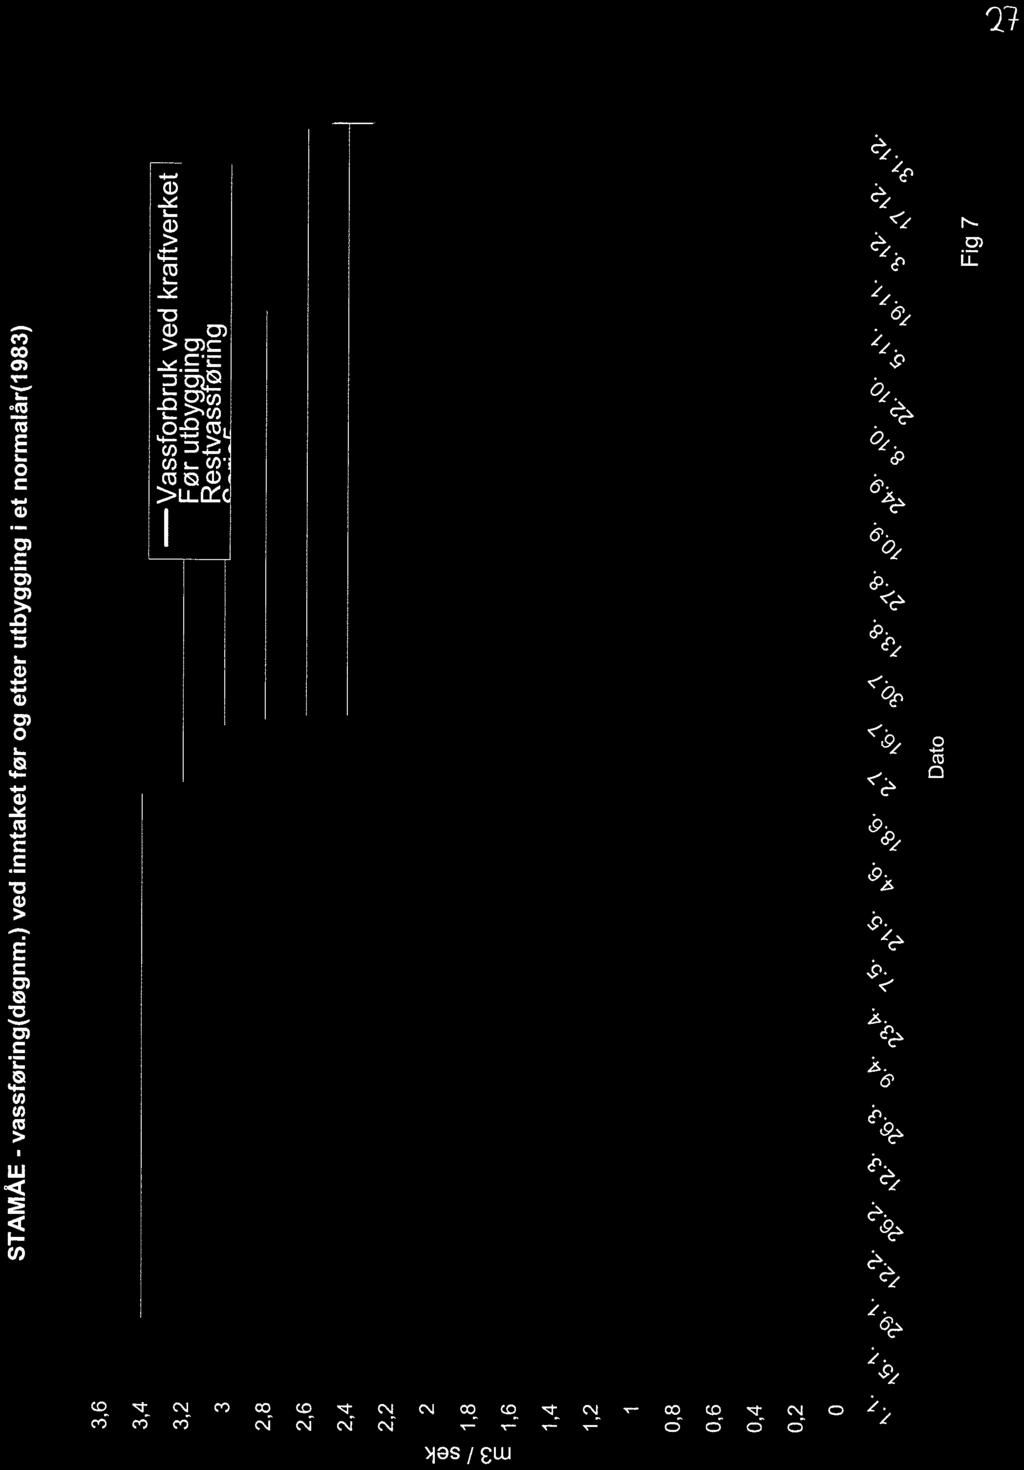 7 2 STAMÅE - vassføring(døgnm.) ved inntaket før og etter utbygging i et normalår(1983) 3,6 3,4 m3 / sek Vassforbru_k ved kraftverket Før utbyg lng Restvass ørmg 3 2 "* ' 2,8 2,6-2,4 - - 2,2.